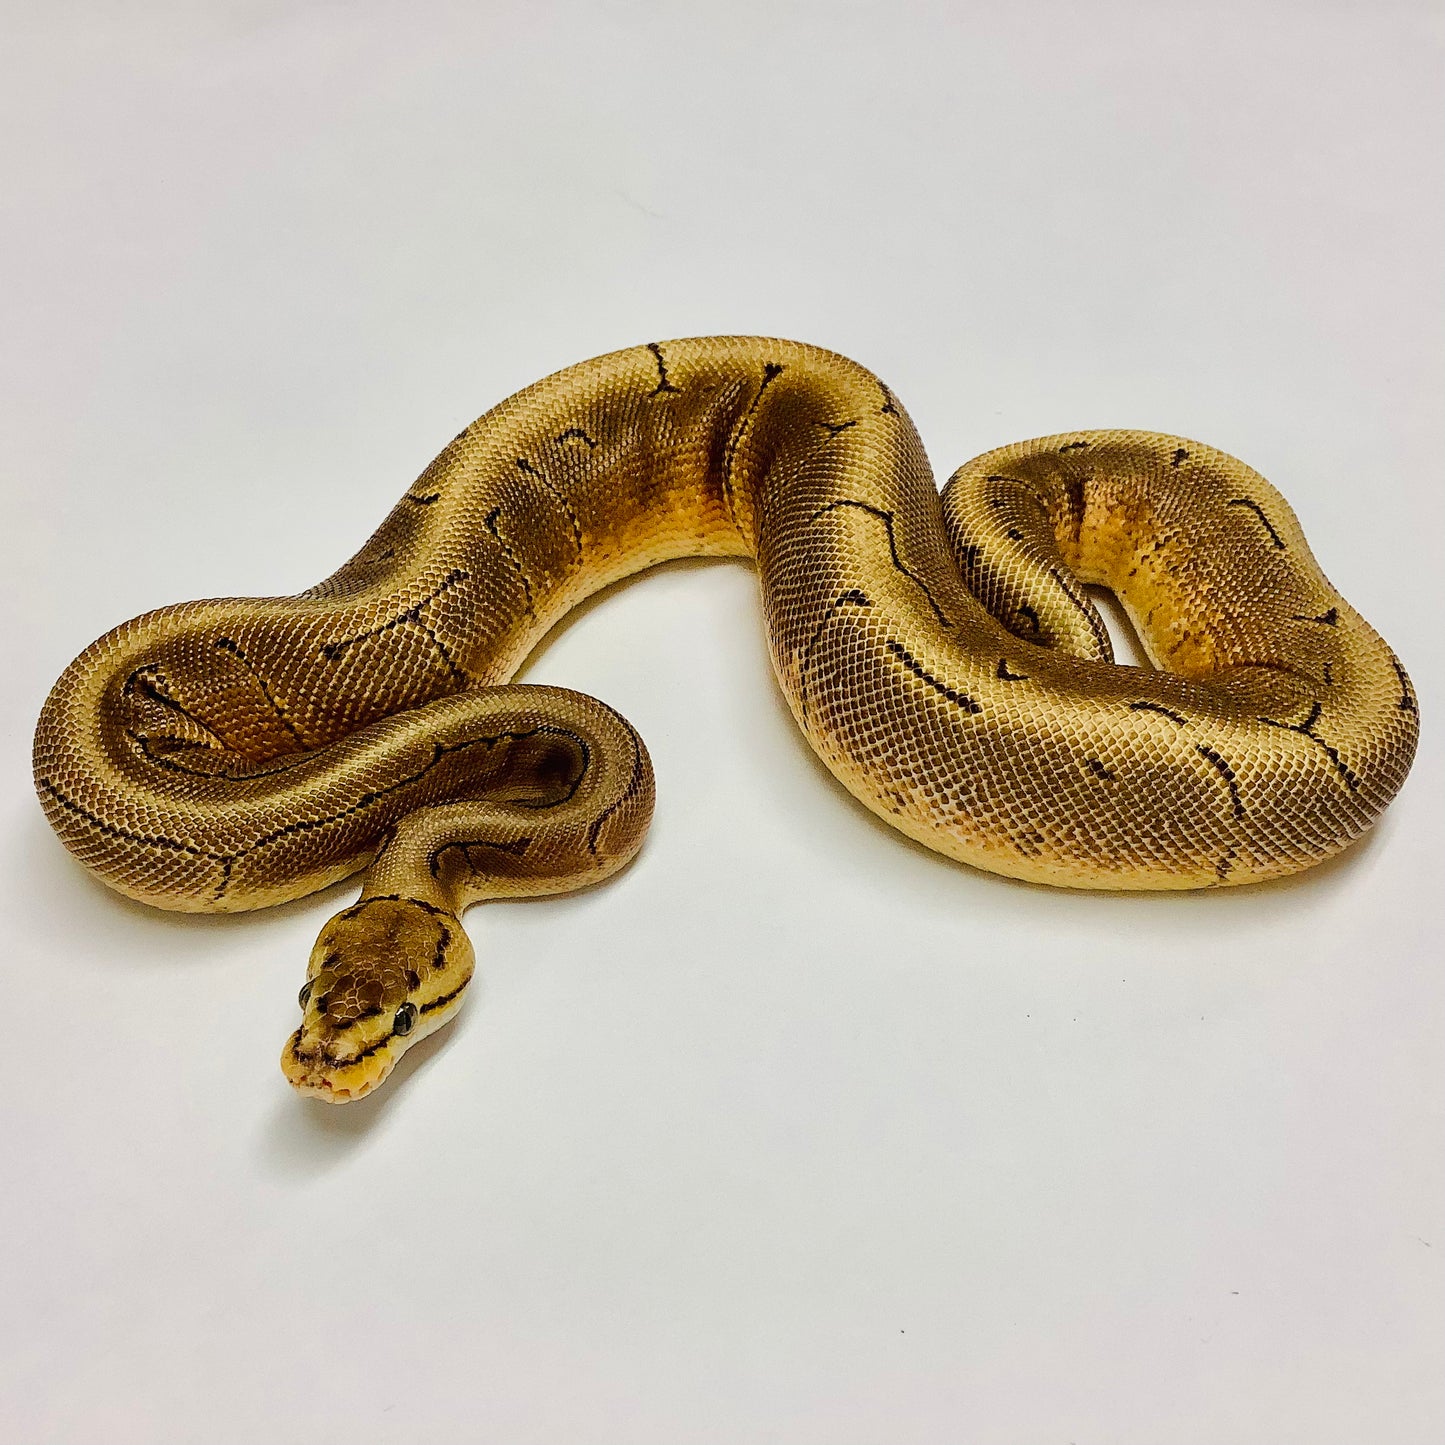 Spinner Red Stripe Ball Python - Female #2021F01-1